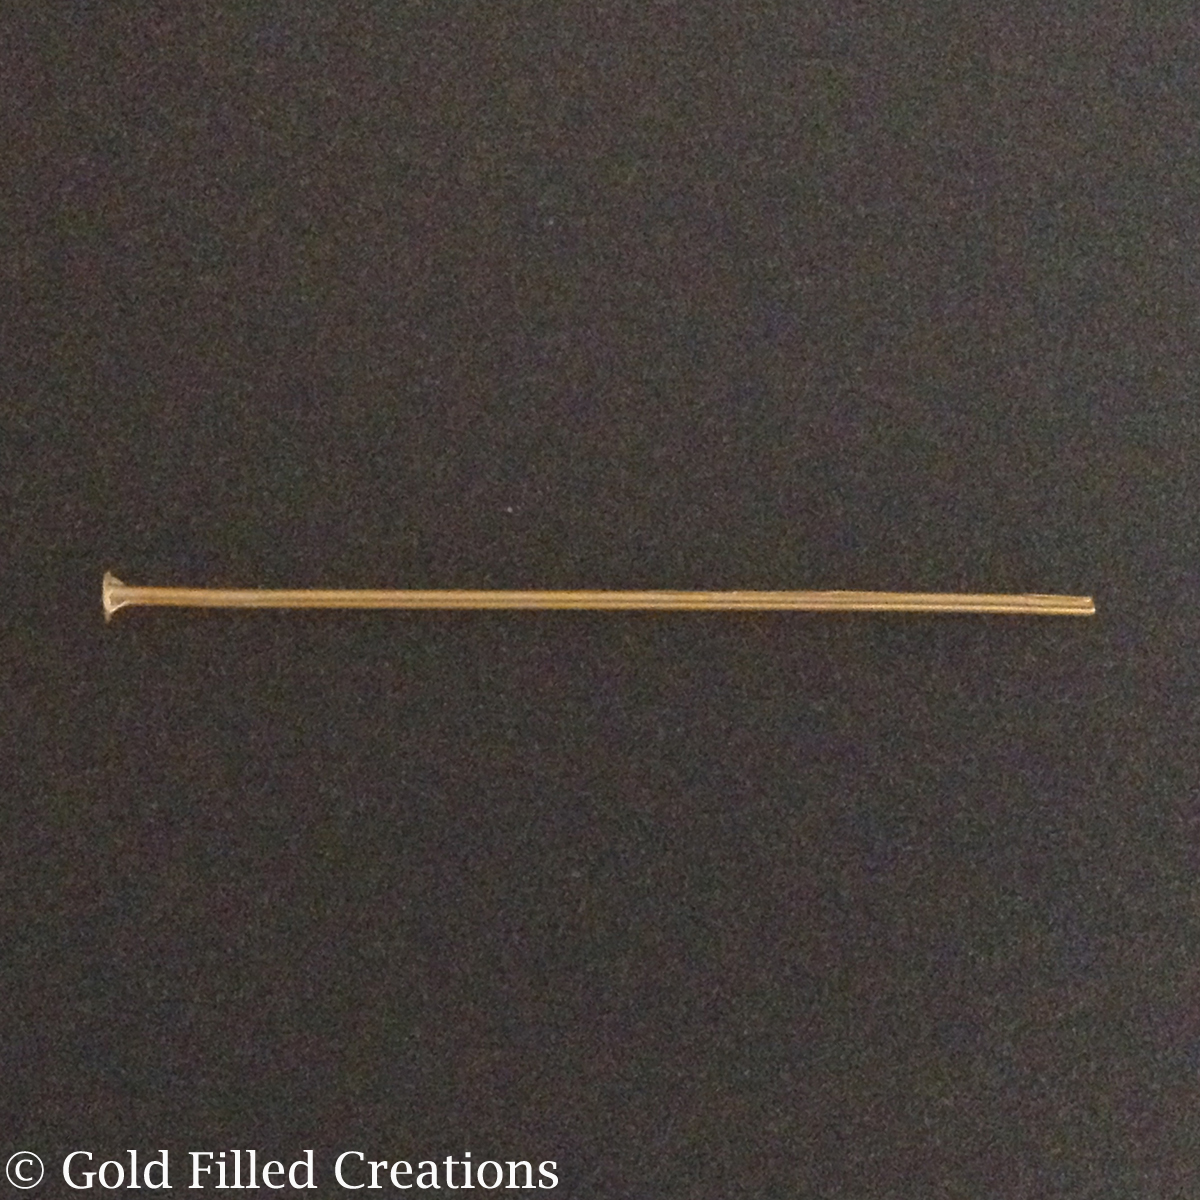 gold Flat Head pins